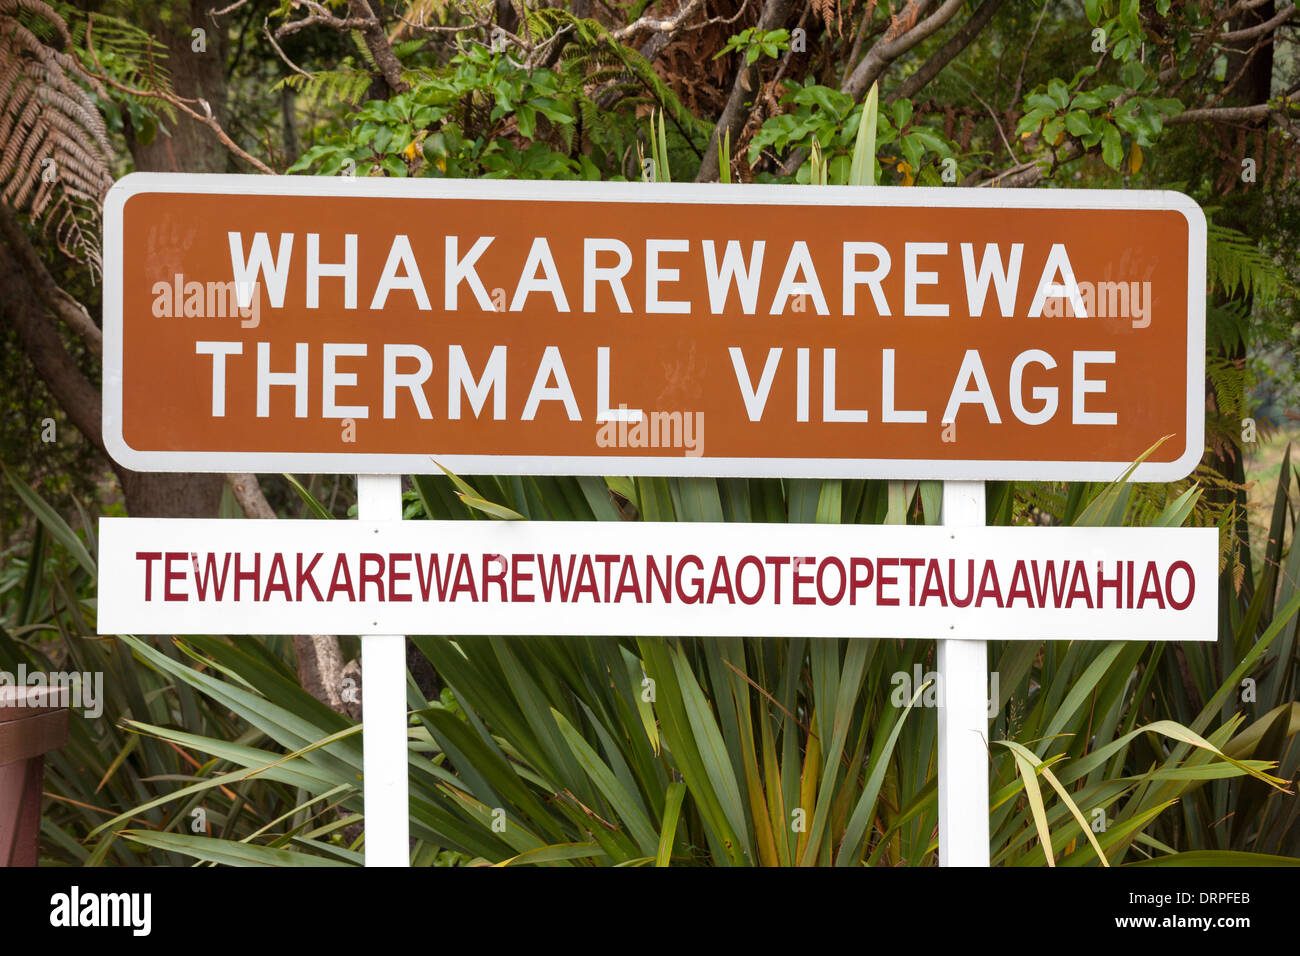 Rotorua Whakarewarewa Thermal Village Sign with the long original Maori name underneath: Tewhakarewarewatangaoteopetauaawahiao Stock Photo